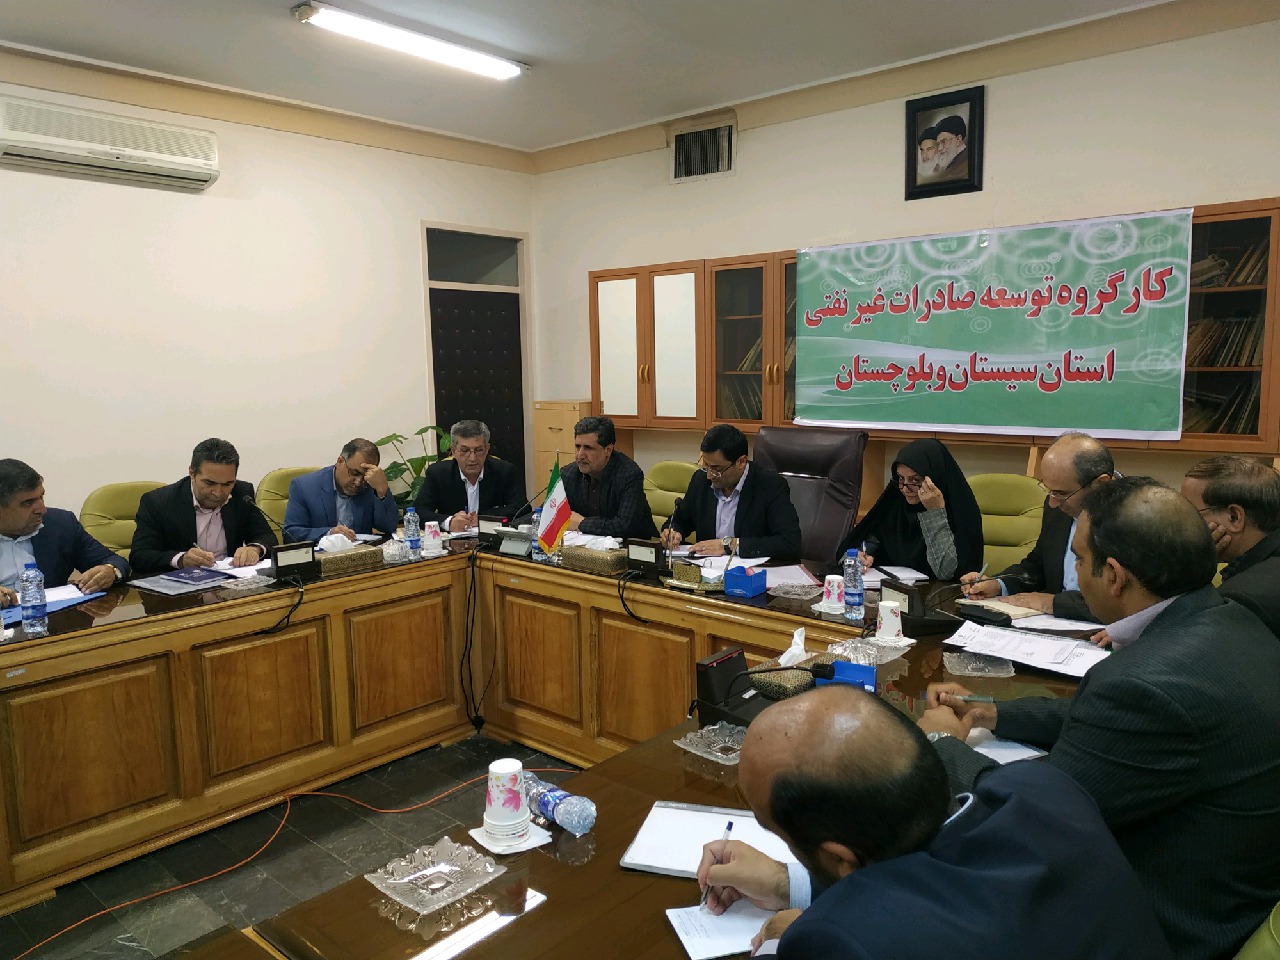 برگزاری هفتمین جلسه کمیته مشترک مرزی ایران و پاکستان در زاهدان